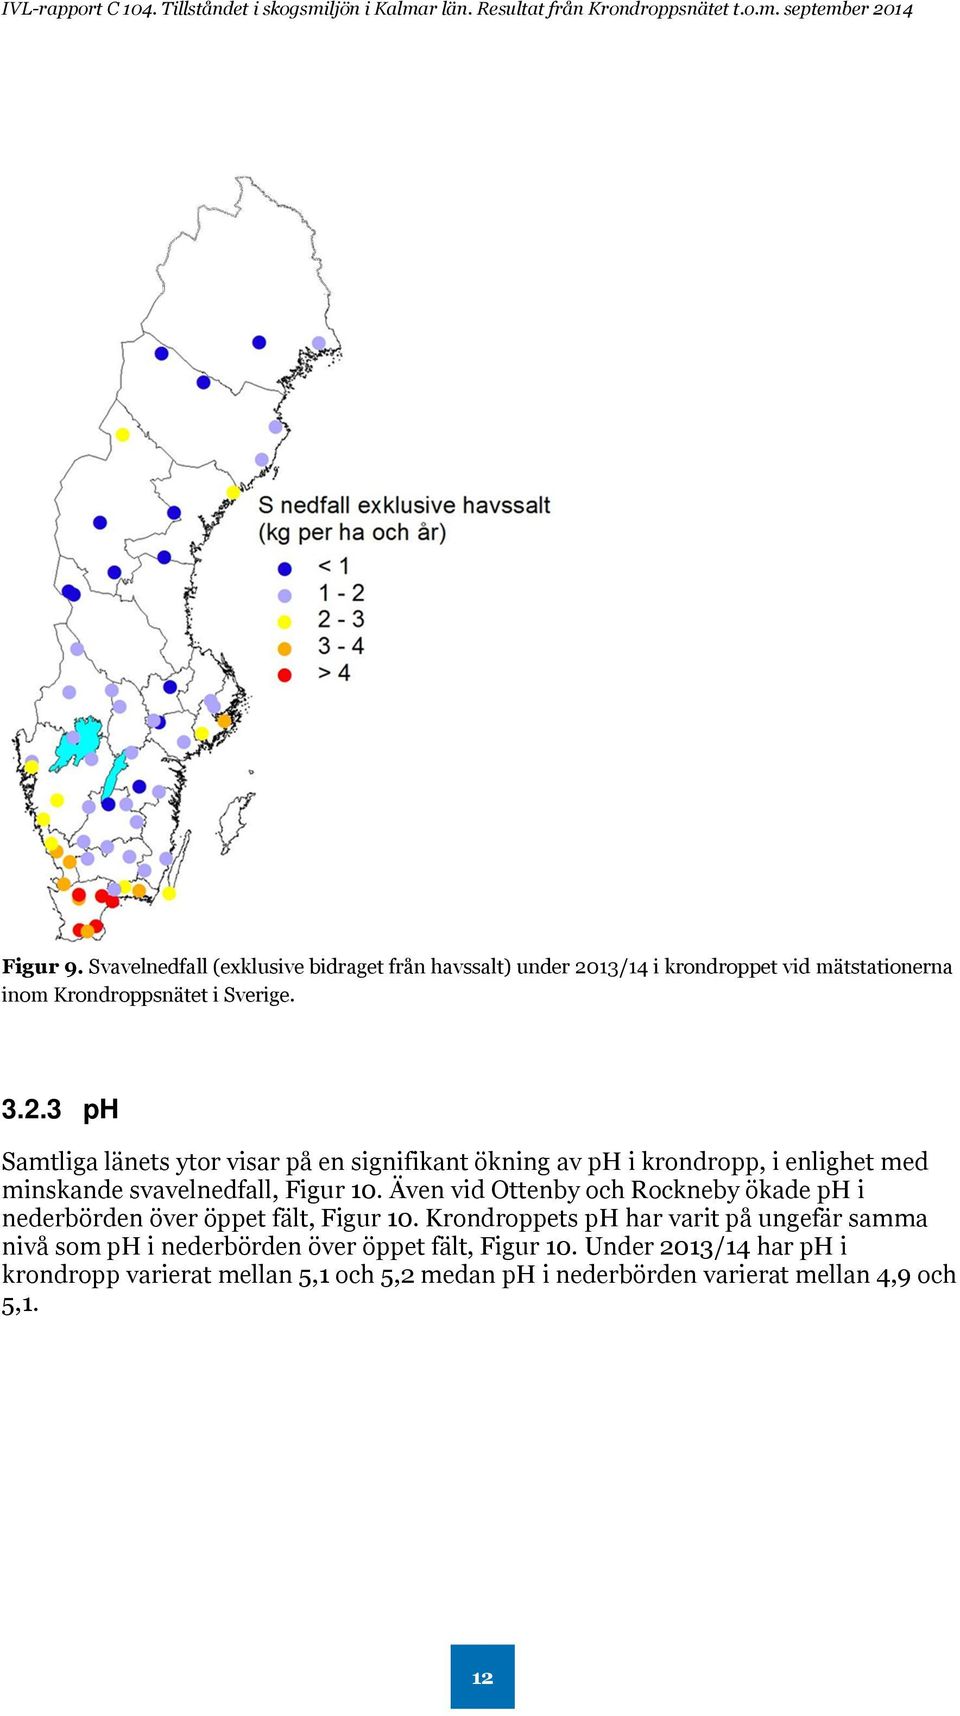 Även vid Ottenby och Rockneby ökade ph i nederbörden över öppet fält, Figur 10.